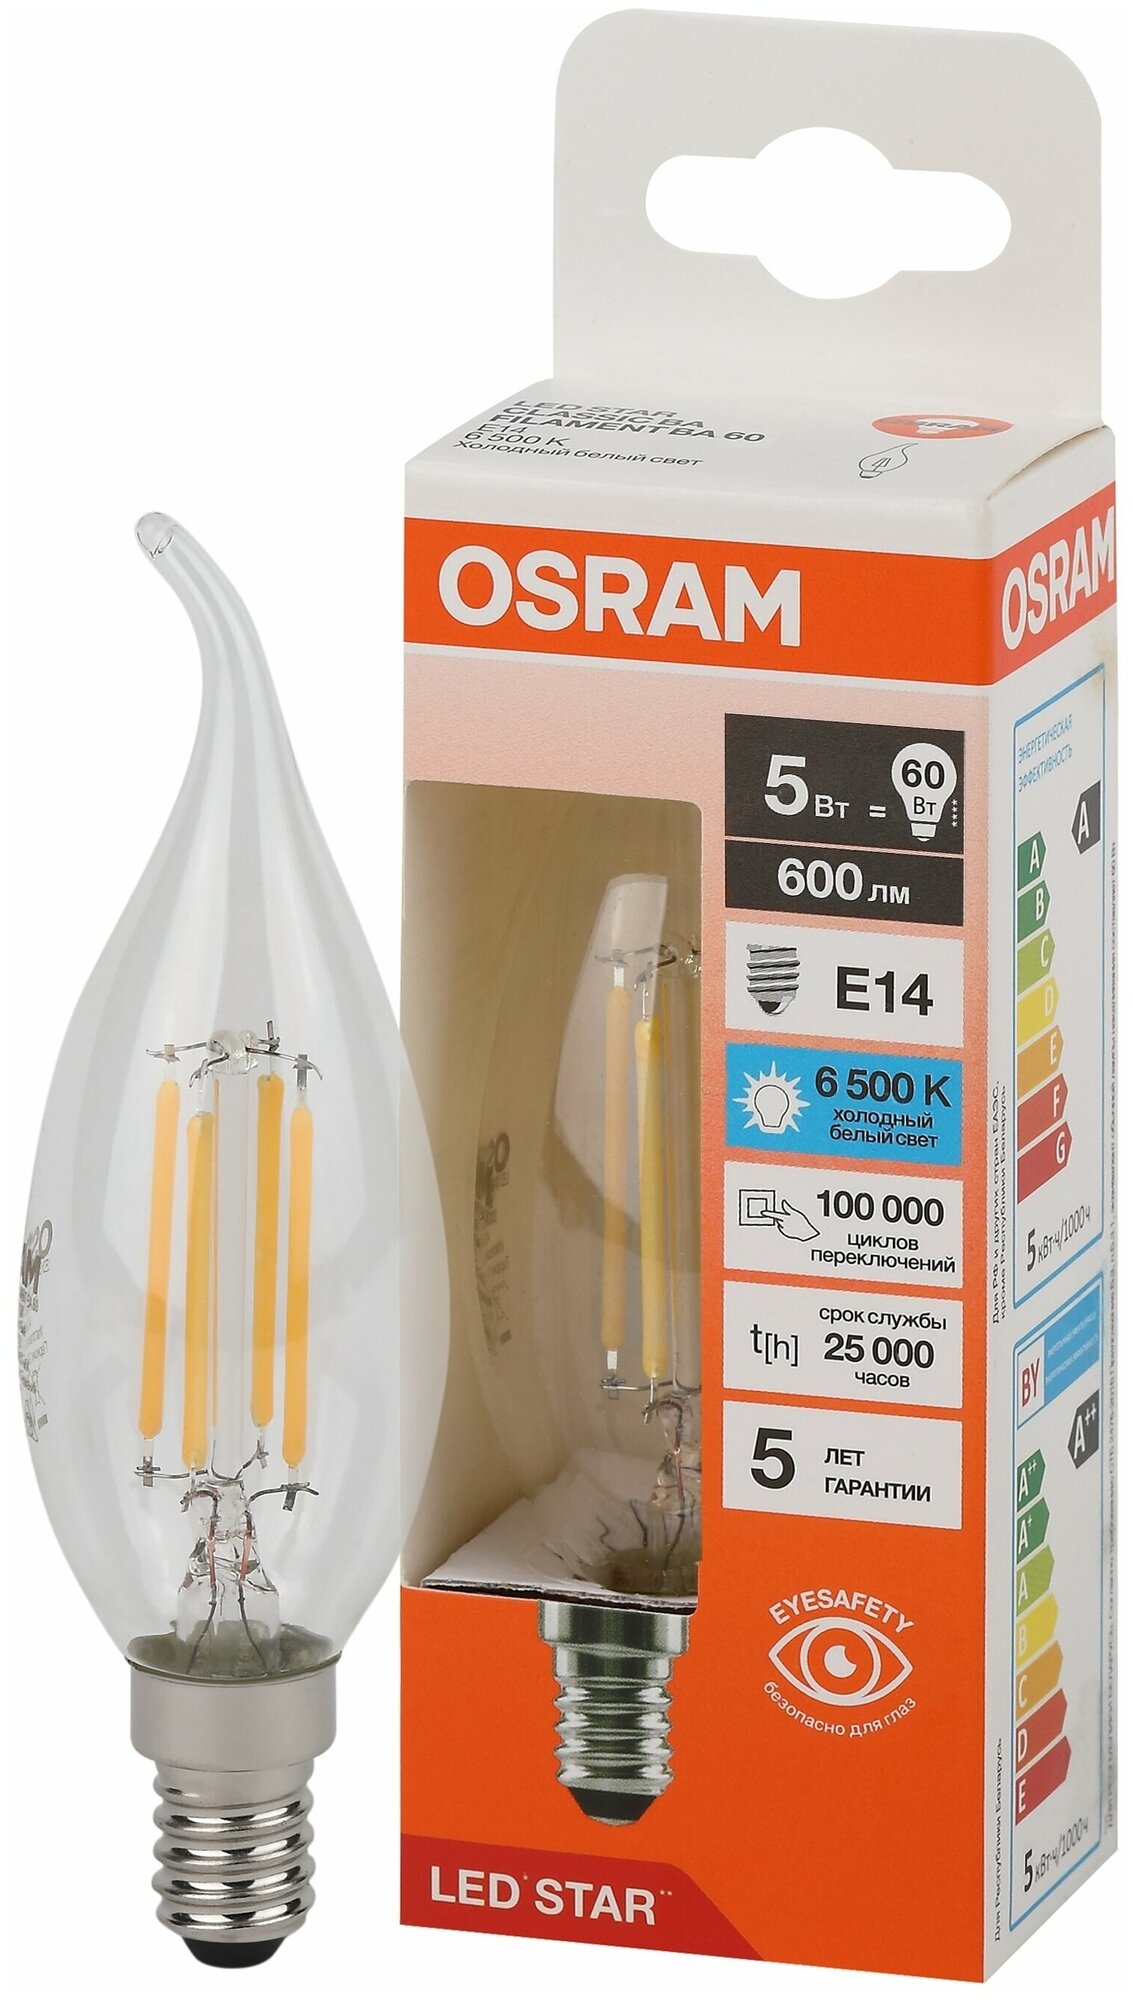 Лампочка светодиодная Osram филаментная стекло Свеча на ветру BA E14 5Вт 220В 600Лм 6500К Холодный белый упаковка 10шт